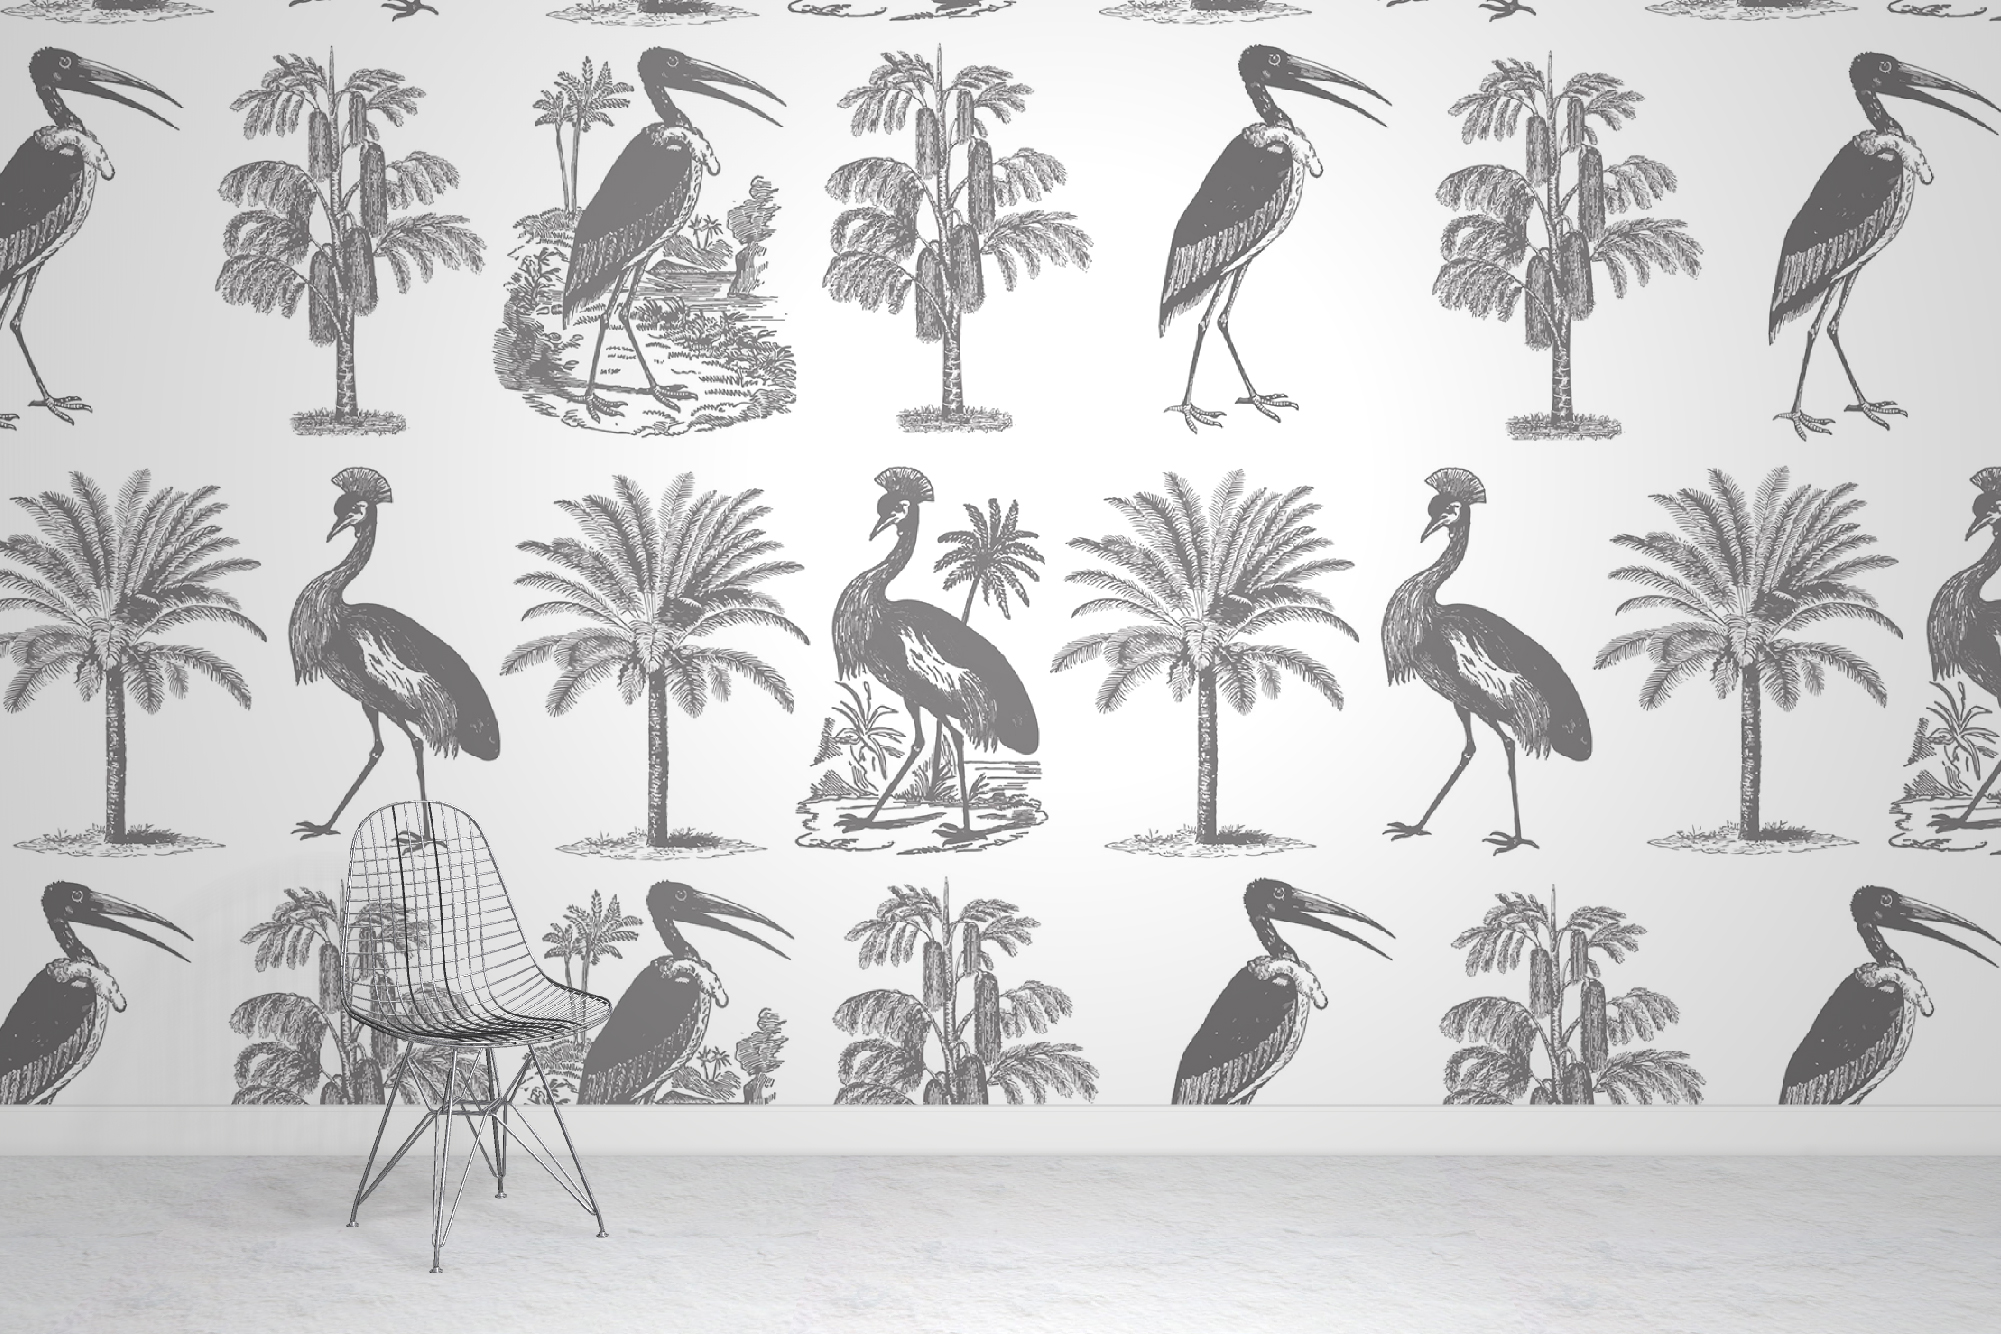 Jungle Bird Wallpaper